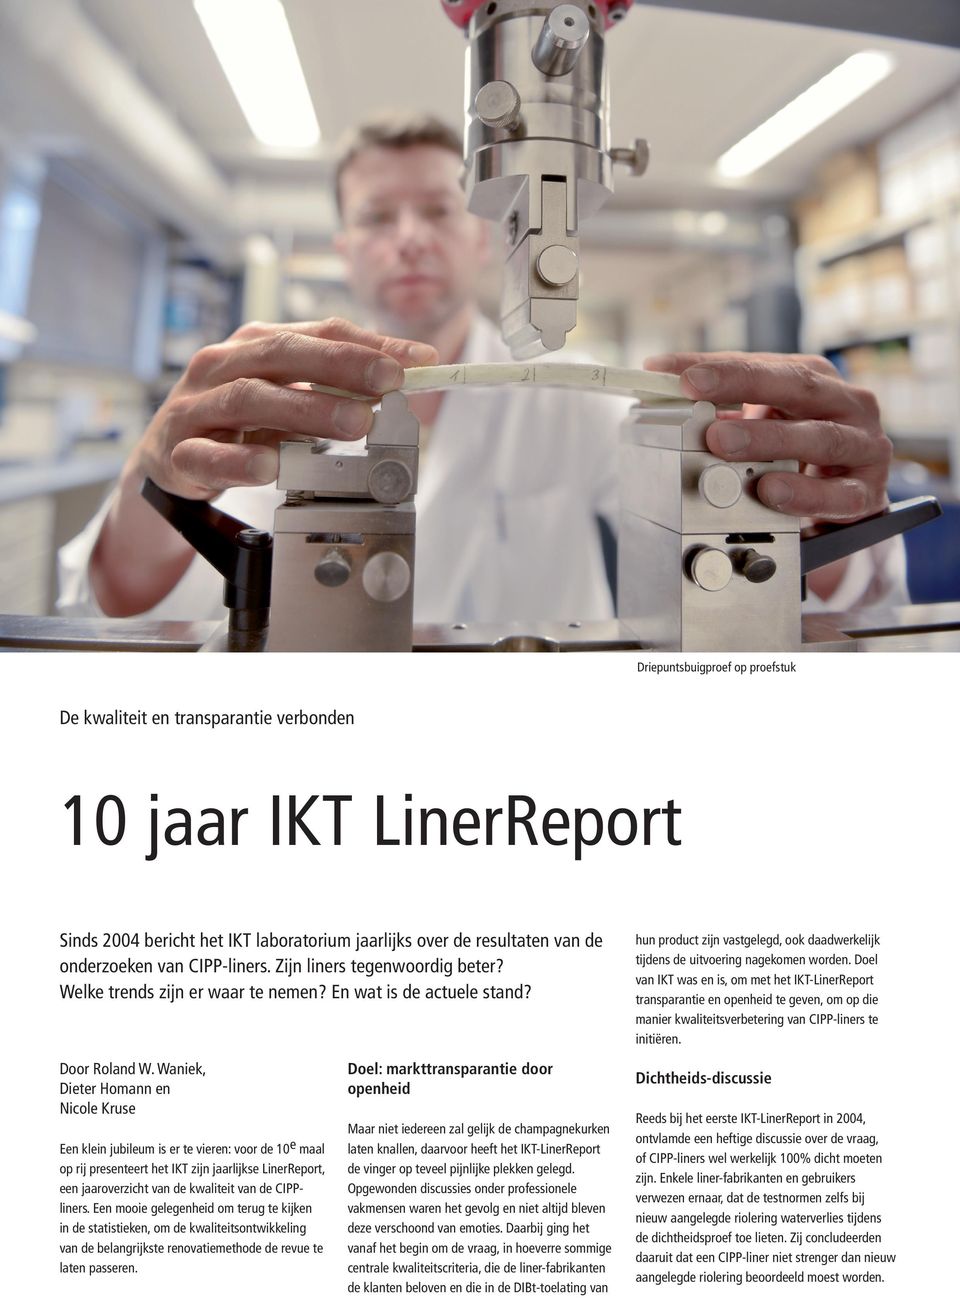 Waniek, Dieter Homann en Nicole Kruse Een klein jubileum is er te vieren: voor de 10e maal op rij presenteert het IKT zijn jaarlijkse LinerReport, een jaaroverzicht van de kwaliteit van de CIPPliners.